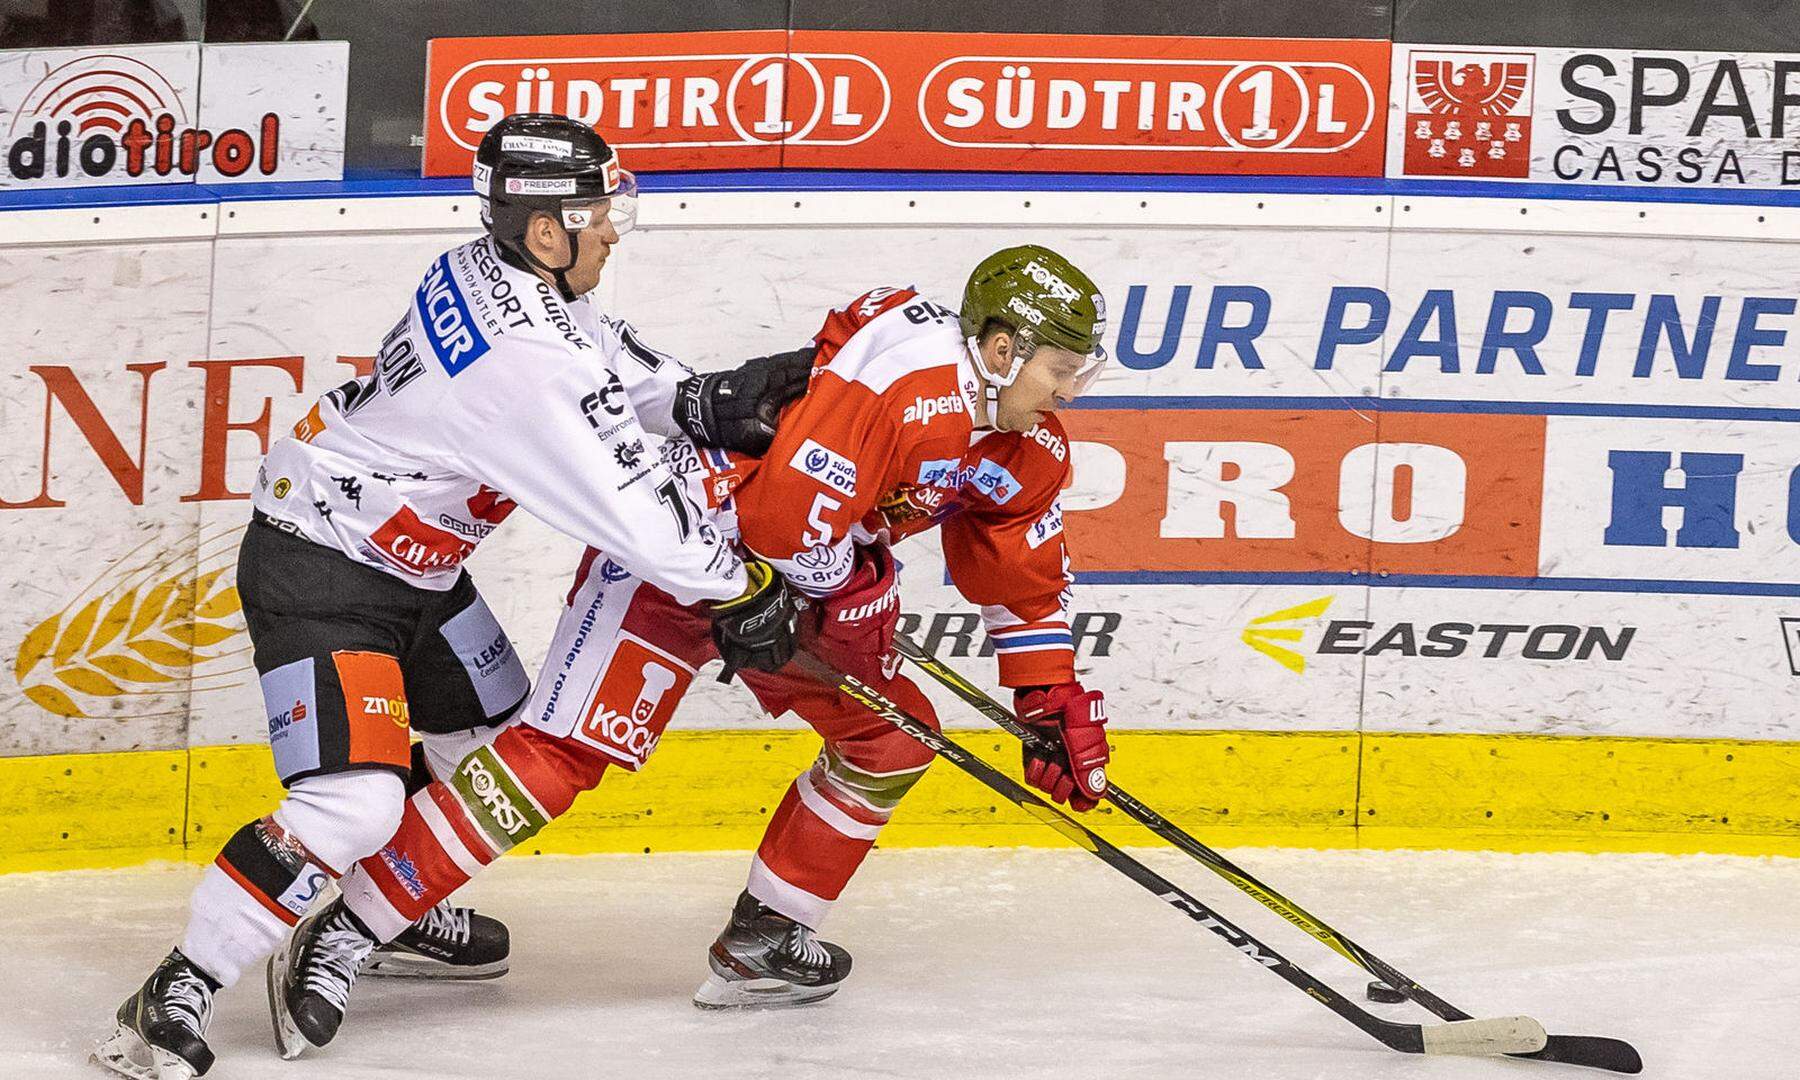 Puls 24 neuer TV-Partner der Eishockey-Liga DiePresse